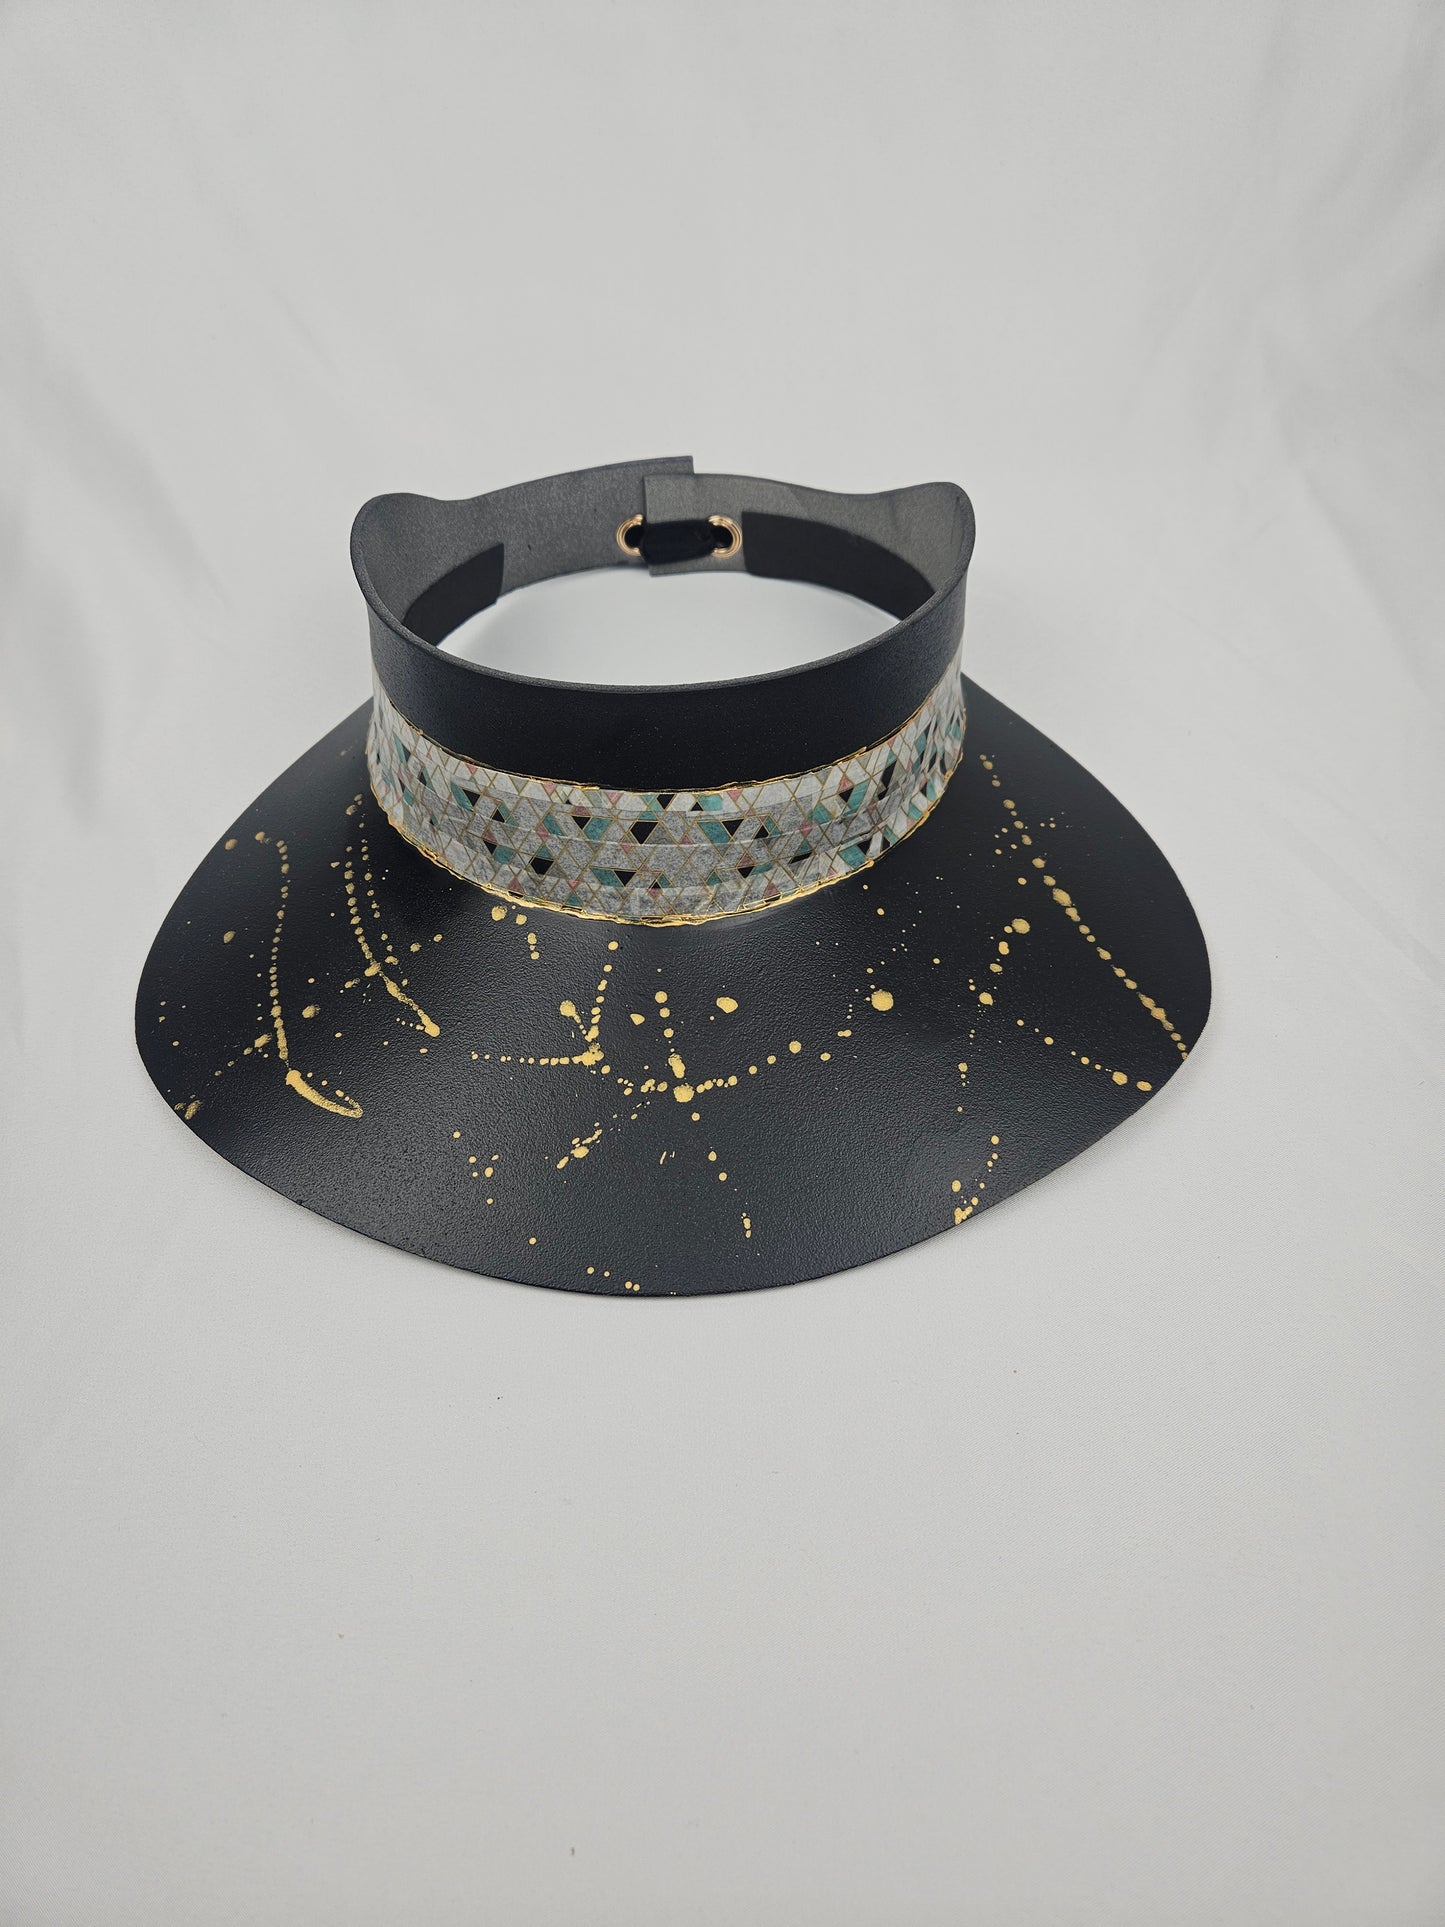 Tall Timeless Black Audrey Foam Sun Visor Hat with Elegant Geometric Band and Golden Paint Splatter: 1950s, Walks, Brunch, Tea, Golf, Wedding, Church, No Headache, Easter, Pool